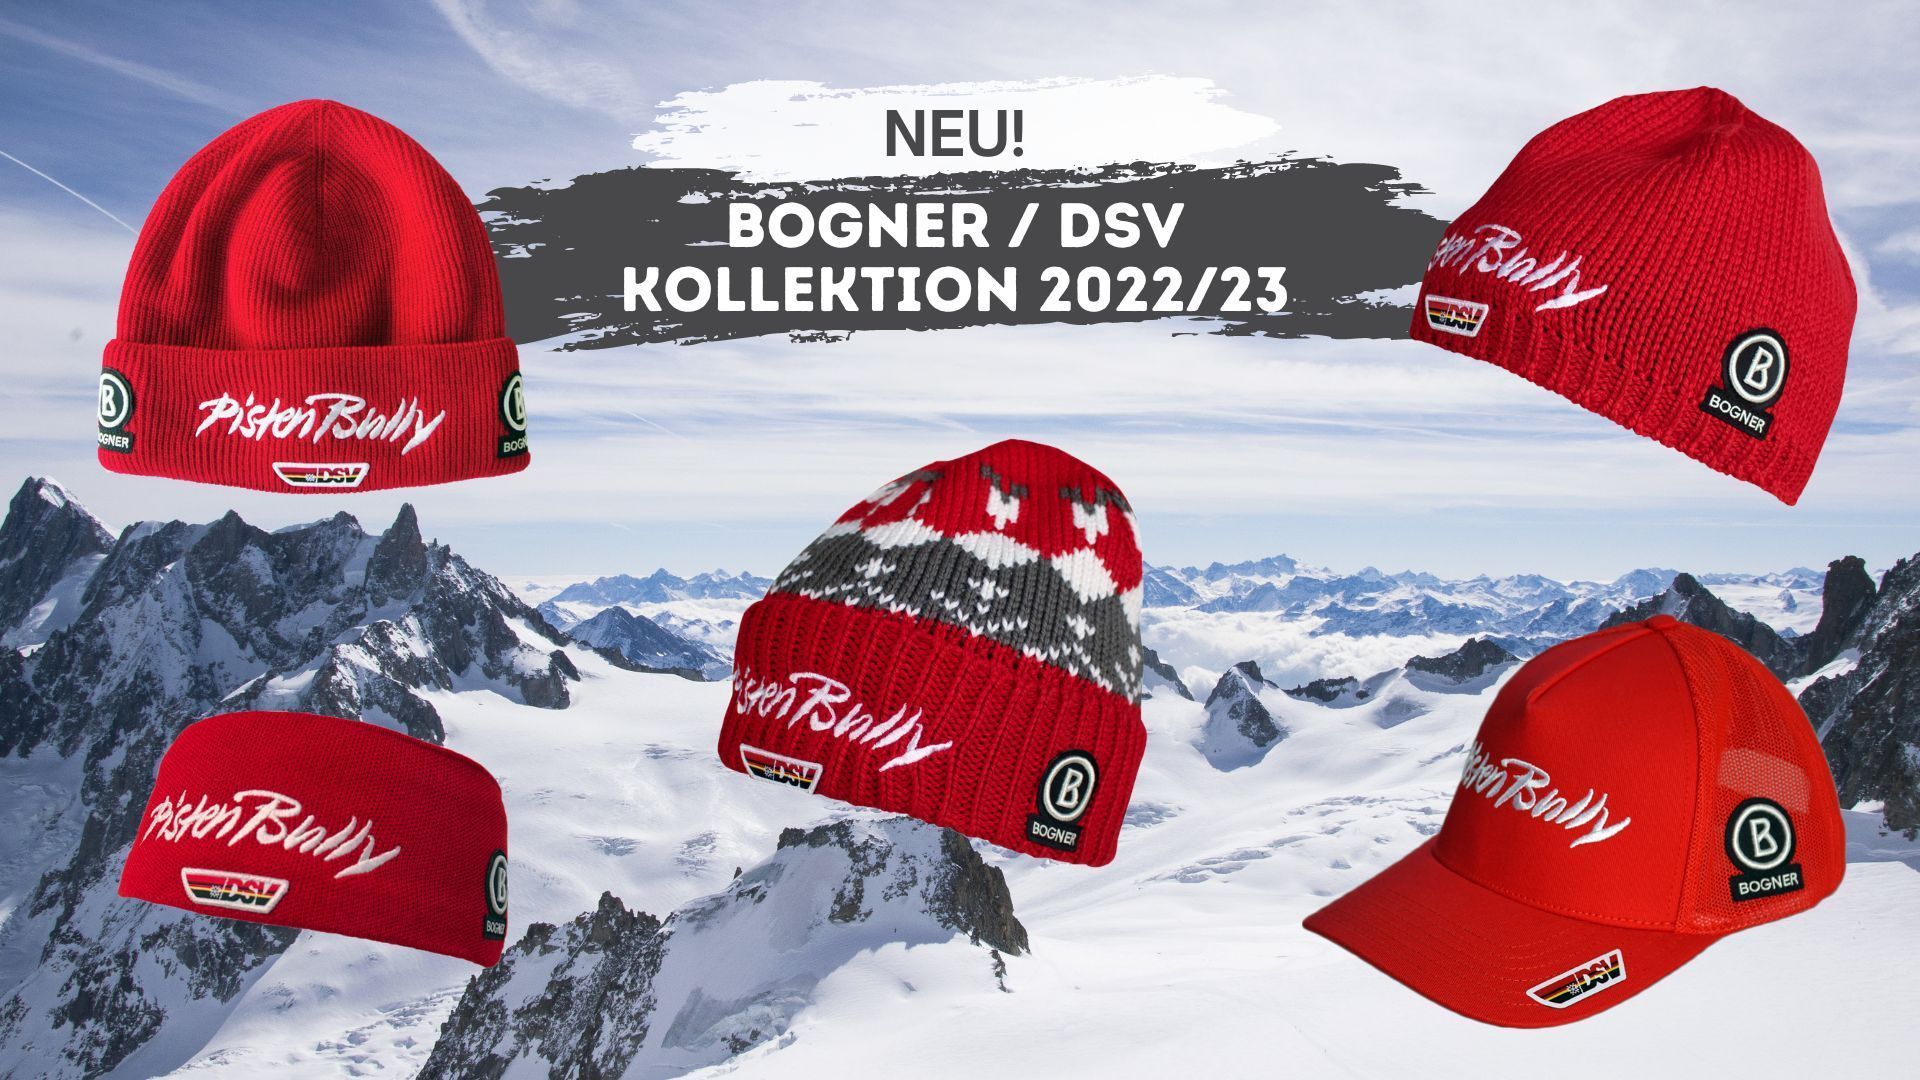 Kollektion Bogner/DSV